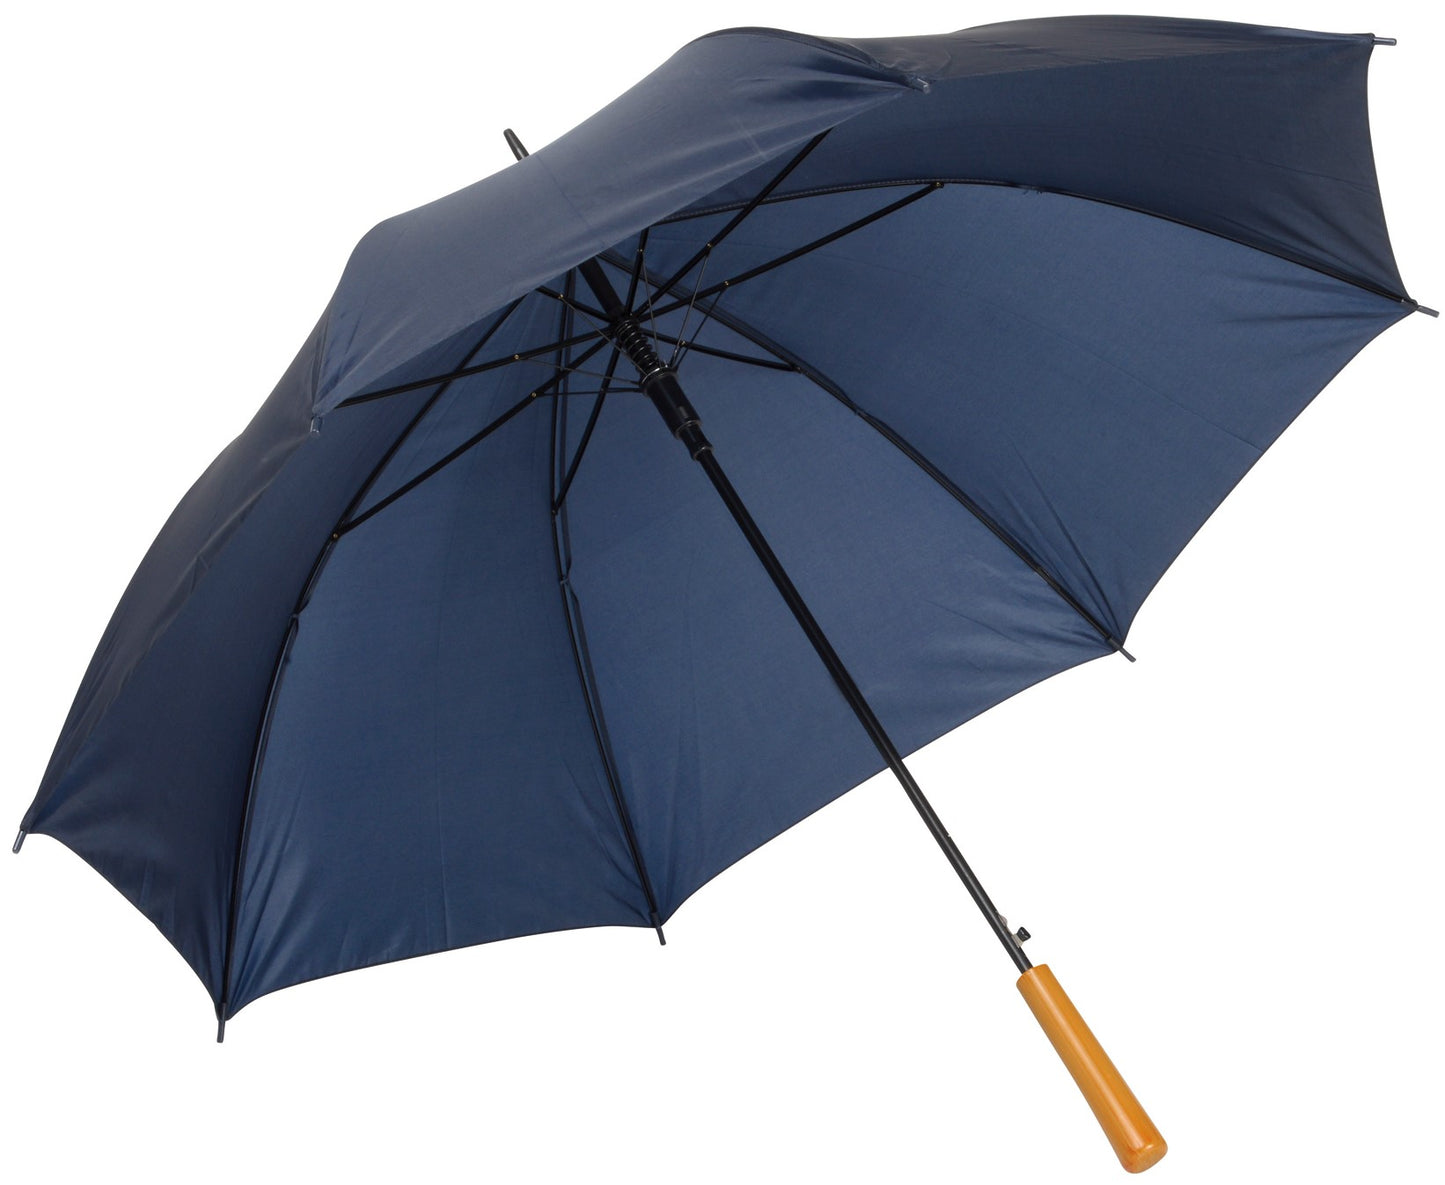 Μπλε μαρίν ομπρέλα βροχής, μακριά, αυτόματη.